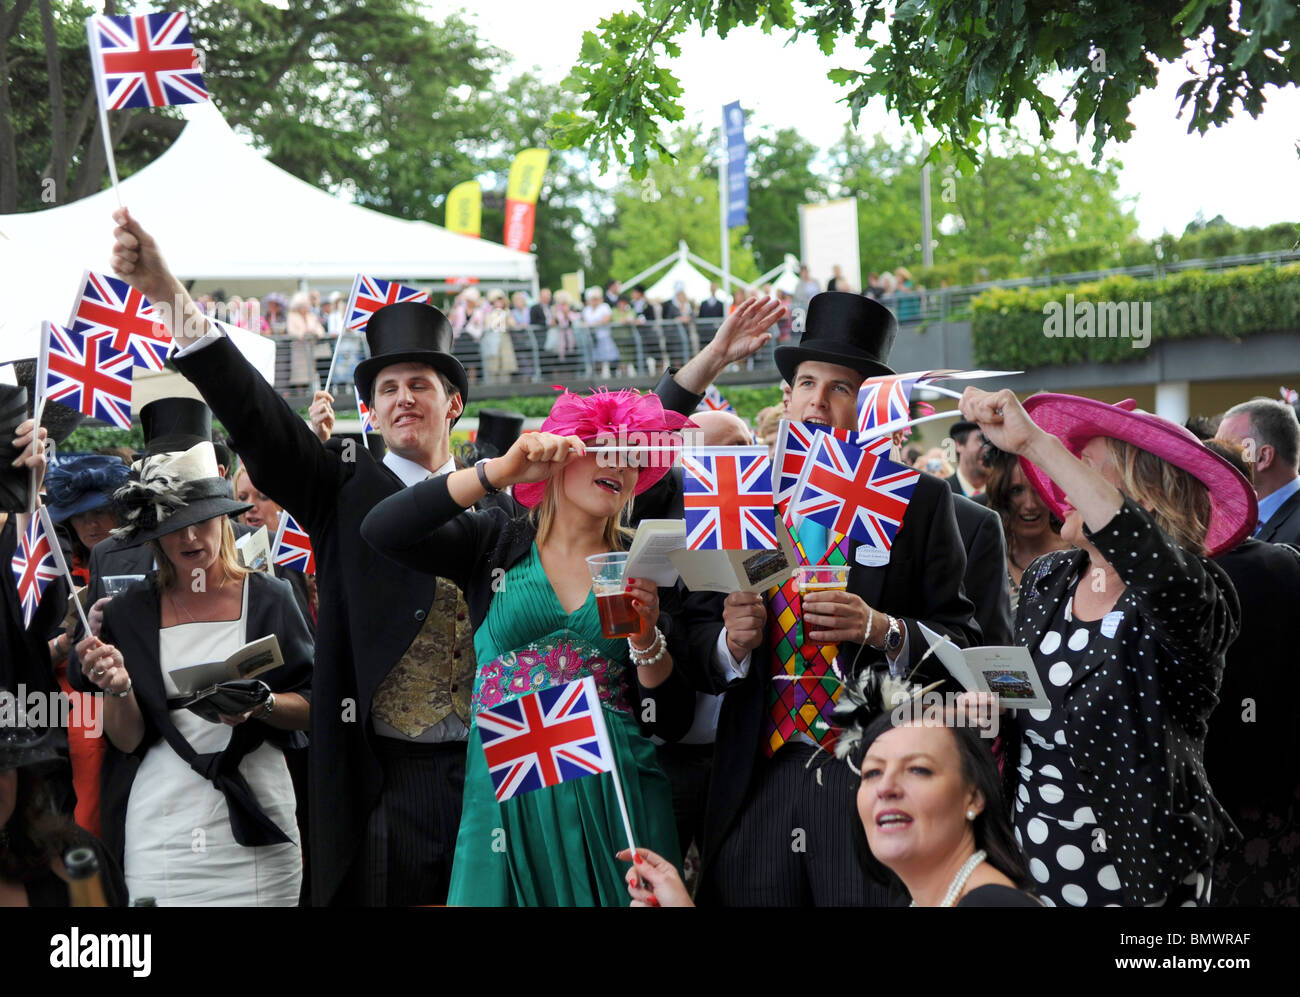 Royal Ascot Berkshire - Racegoers profiter de la traditionnelle fin de journée singsong au kiosque avec l'Union jack drapeaux pour wave Banque D'Images